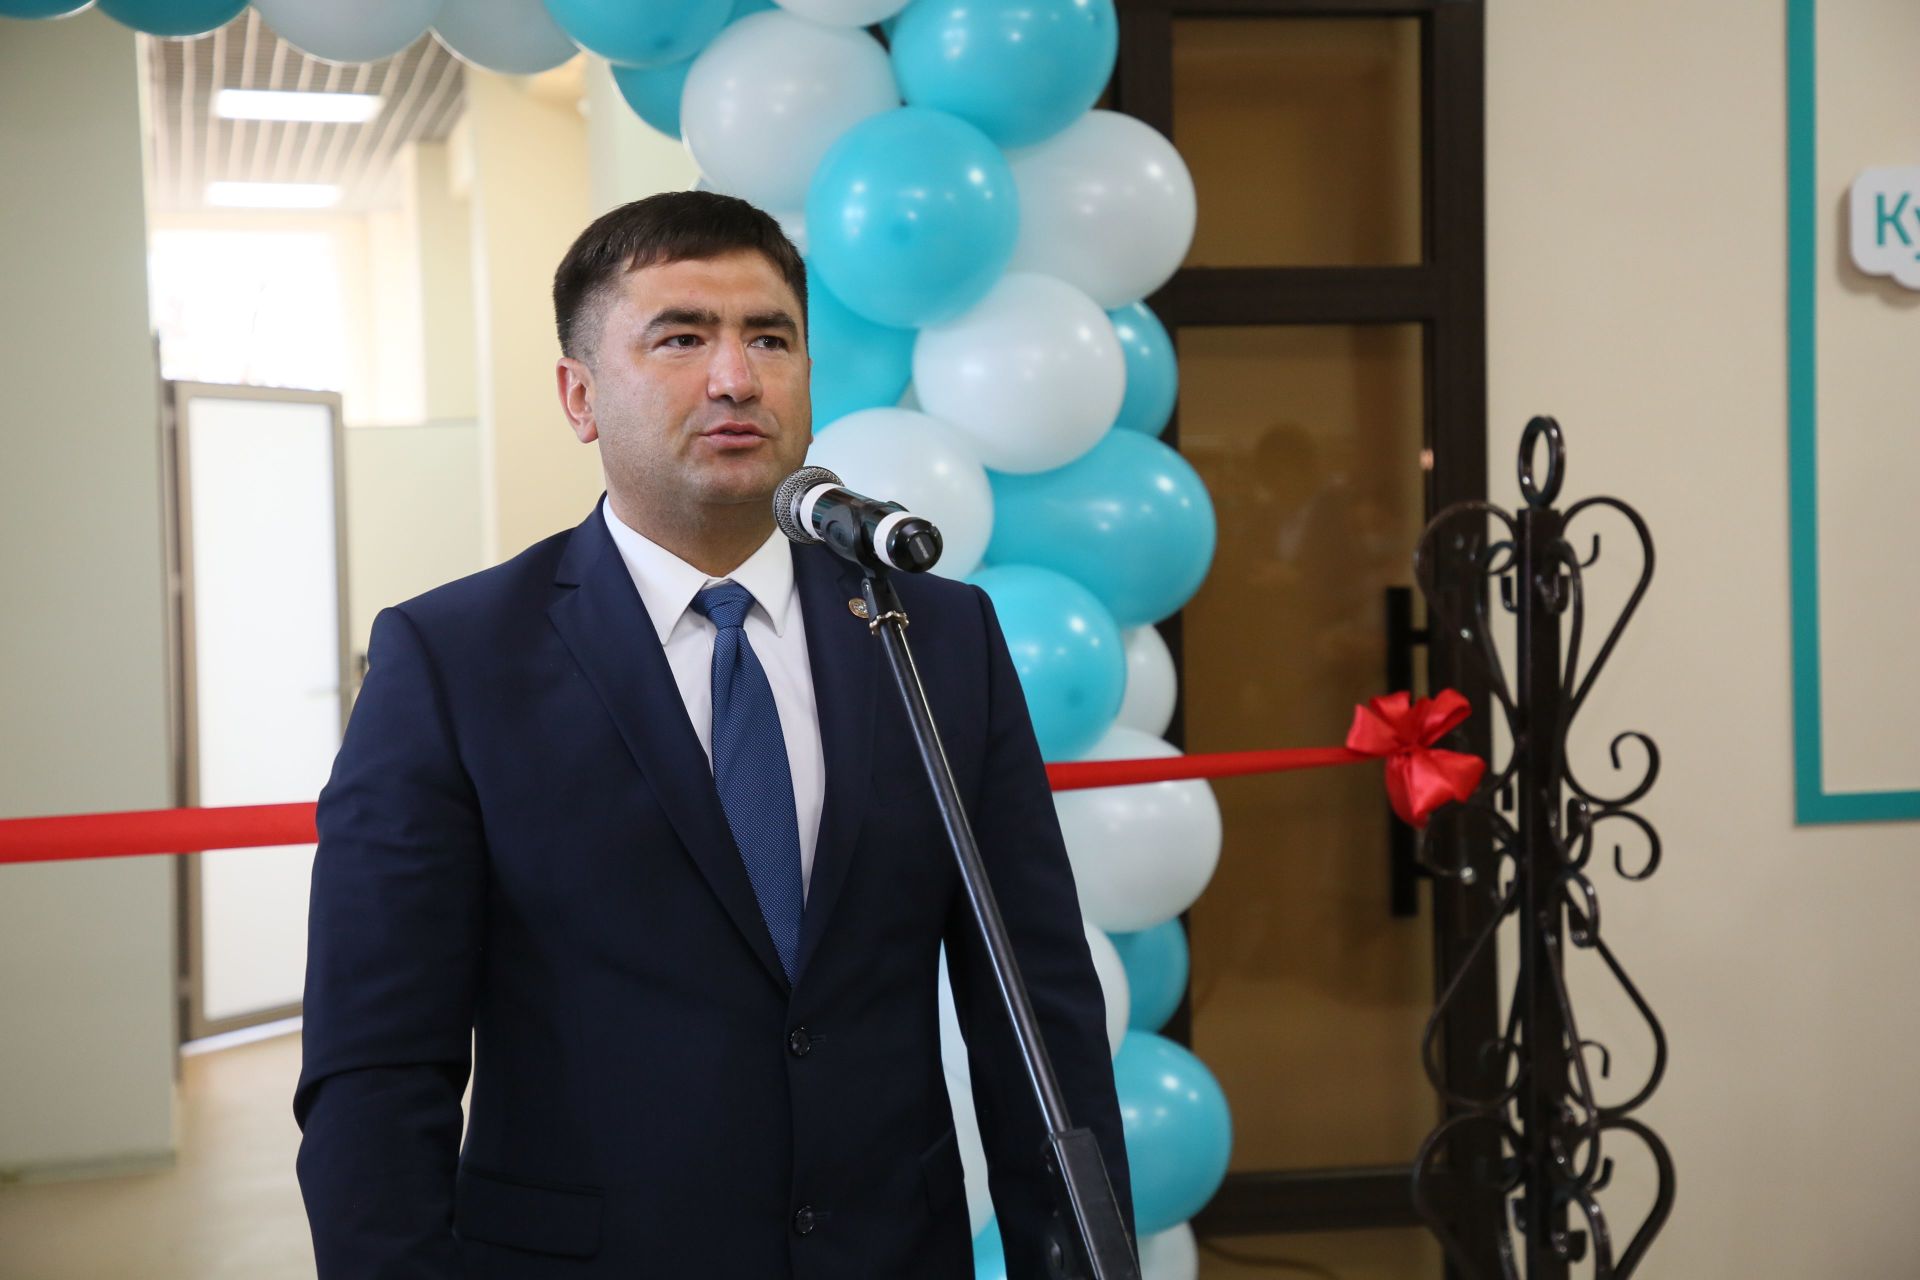 Айдар Салимгараев: Это здание является образцово-показательным для всей республики, как и редакция